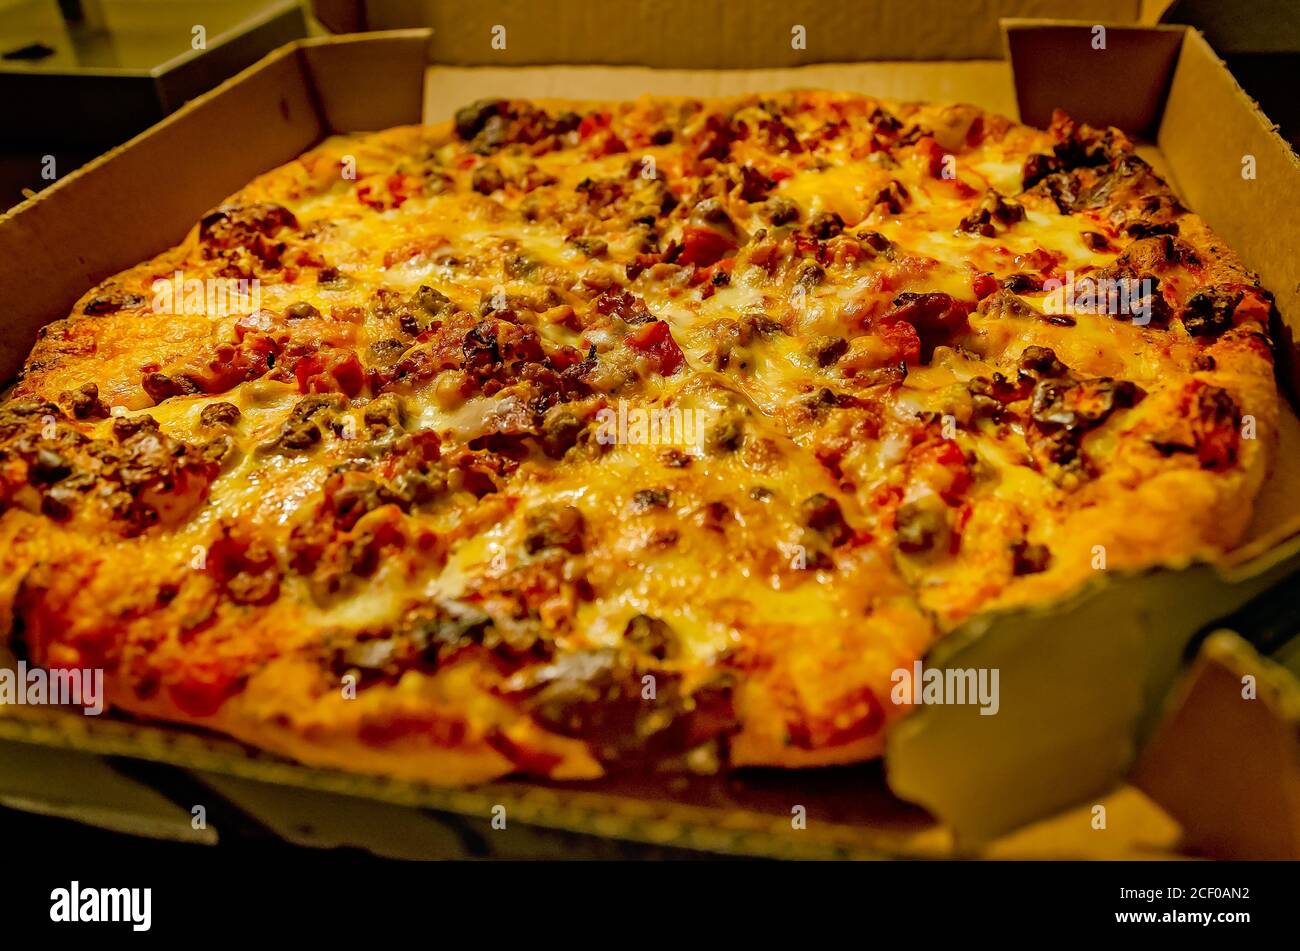 La nouvelle pizza au cheeseburger de Domino se trouve dans une boîte à pizza, le 30 août 2020, à Hammond, en Louisiane. La pizza spéciale est accompagnée d'une sauce à la ketchup-moutarde. Banque D'Images